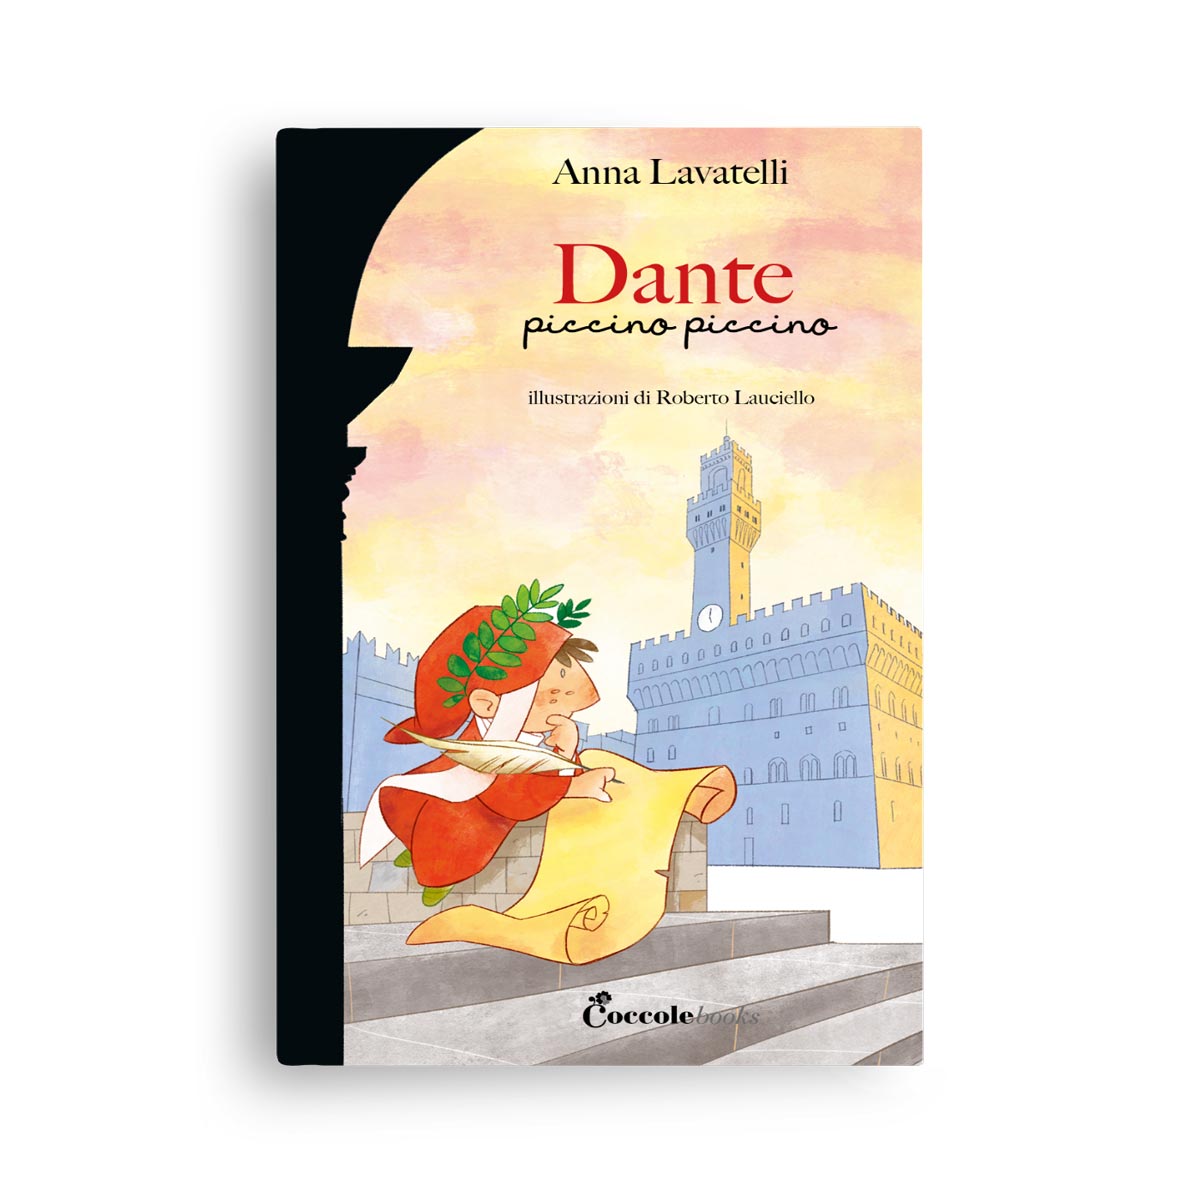 Coccole Books – Dante piccino piccino